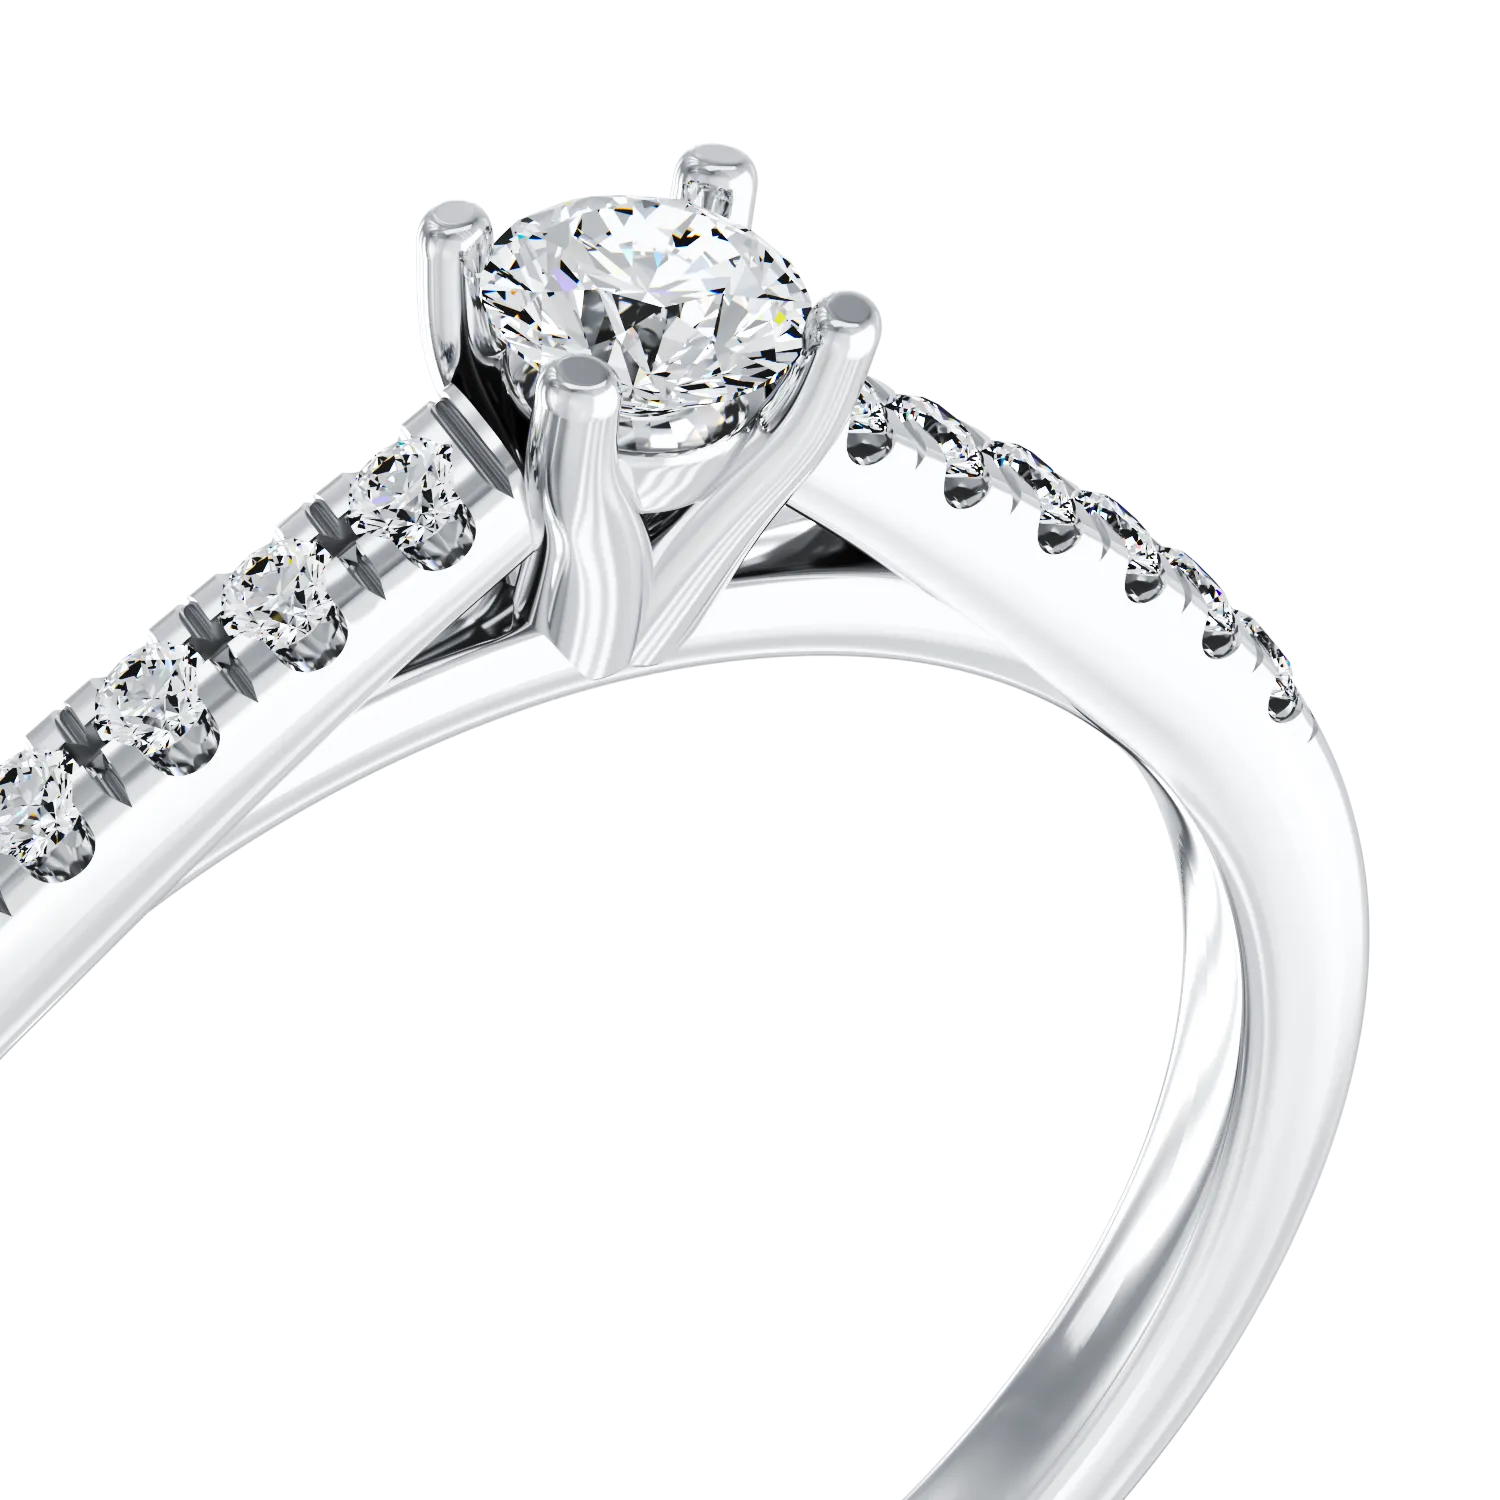 Eljegyzési gyűrű 18K-os fehér aranyból 0,24ct gyémánttal és 0,13ct gyémánttal